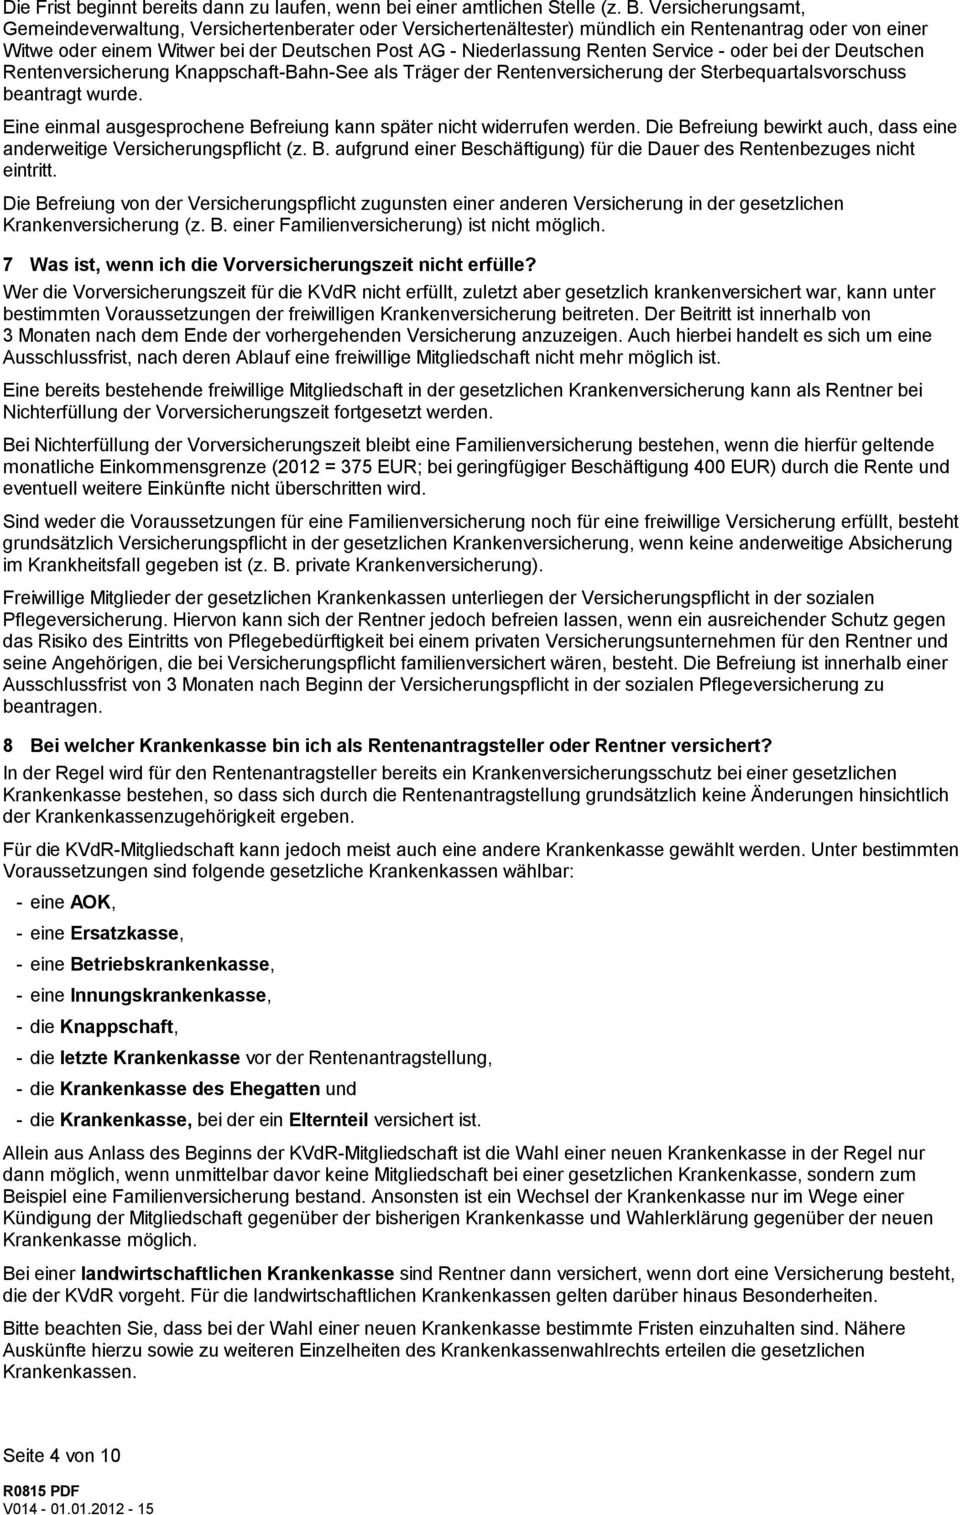 Service - oder bei der Deutschen Rentenversicherung Knappschaft-Bahn-See als Träger der Rentenversicherung der Sterbequartalsvorschuss beantragt wurde.